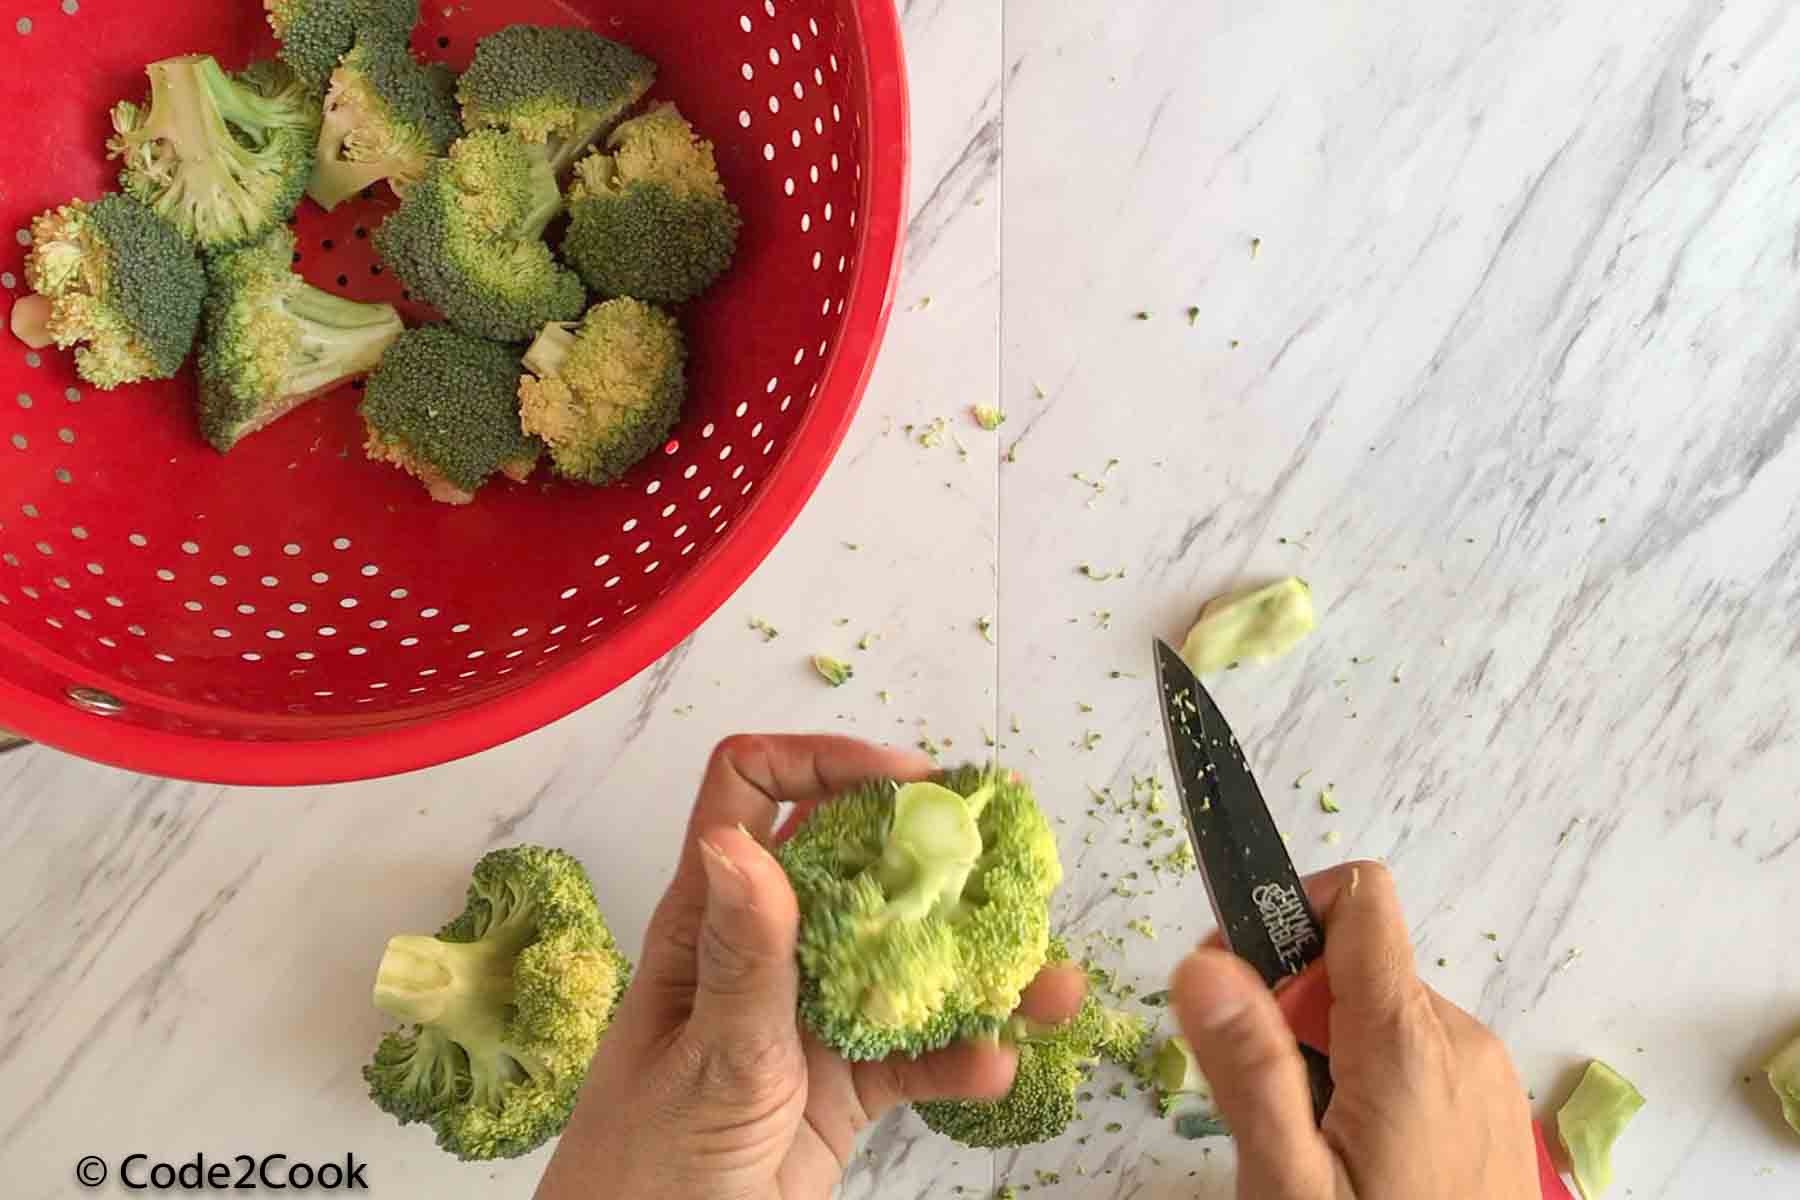 cutting broccoli in medium sized florets